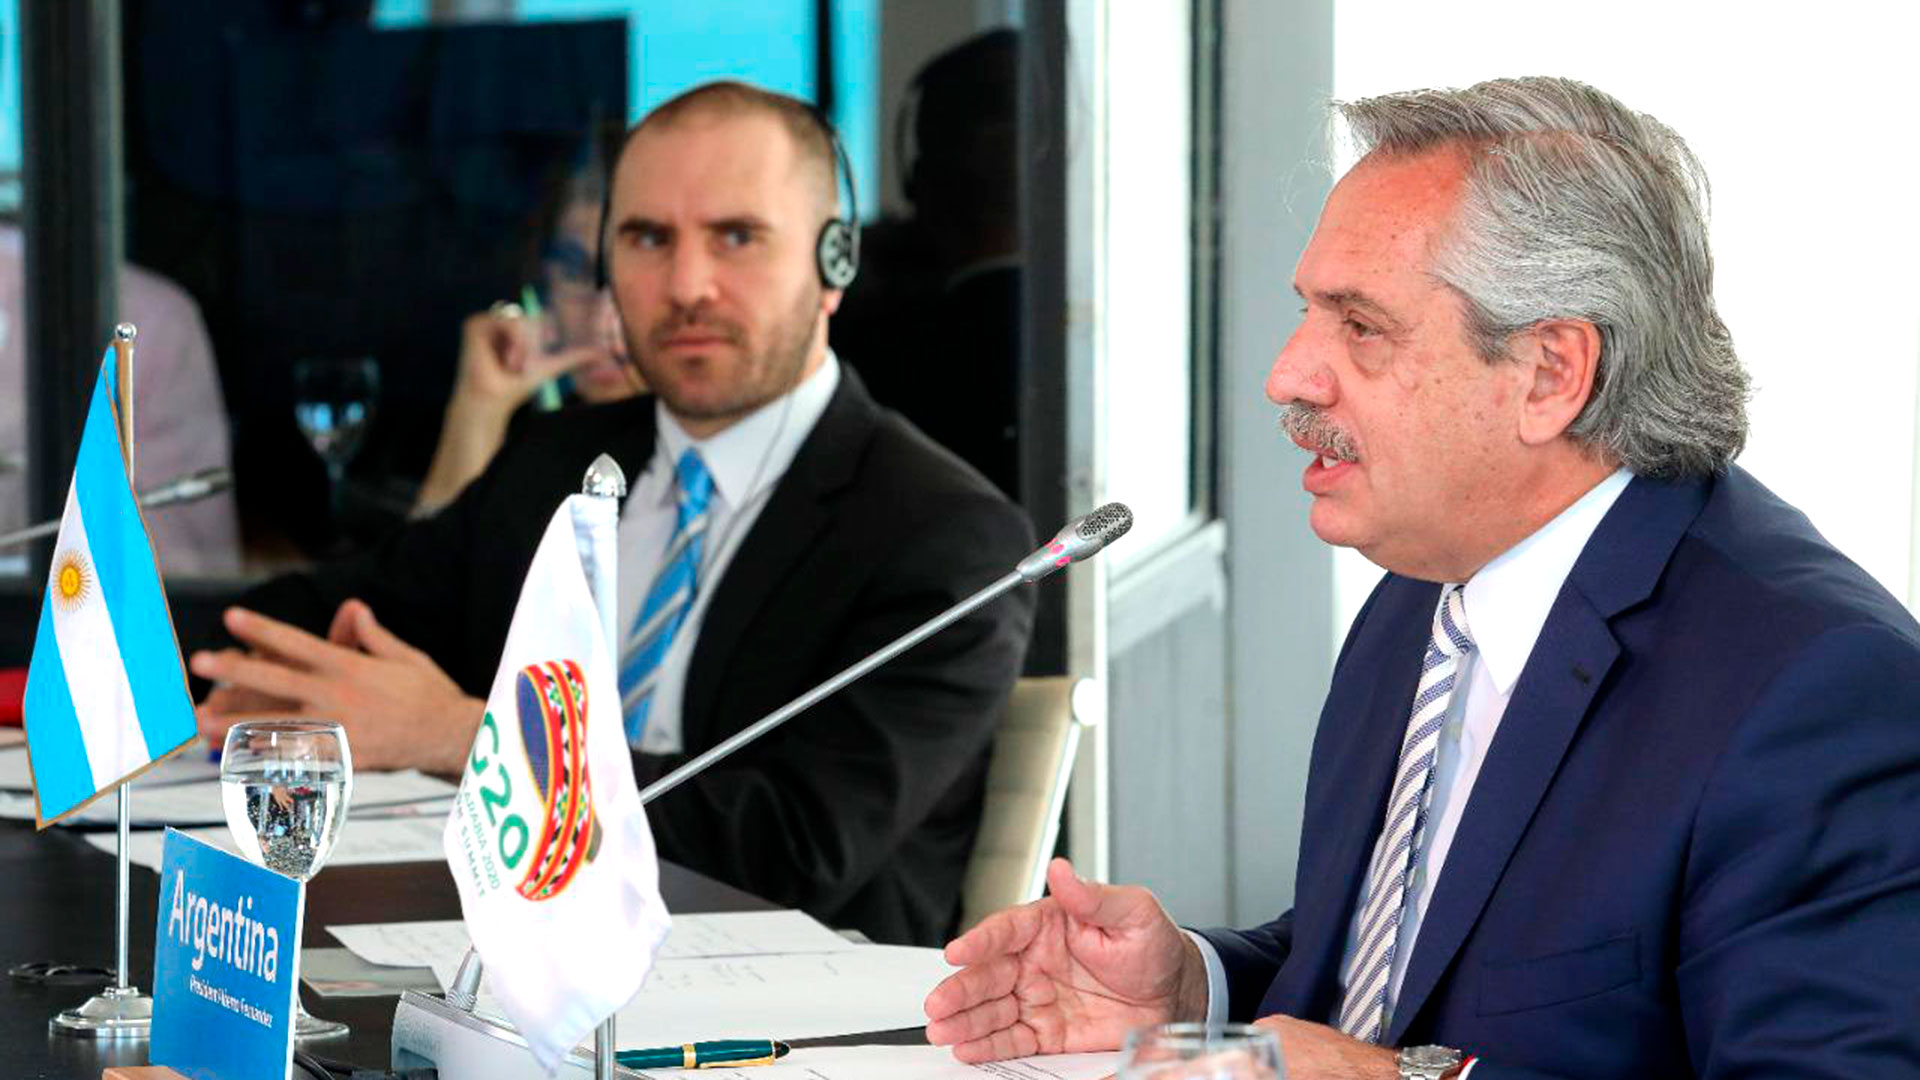 El ministro de Economía, Martín Guzmán, acompañó al mandatario en su intervención